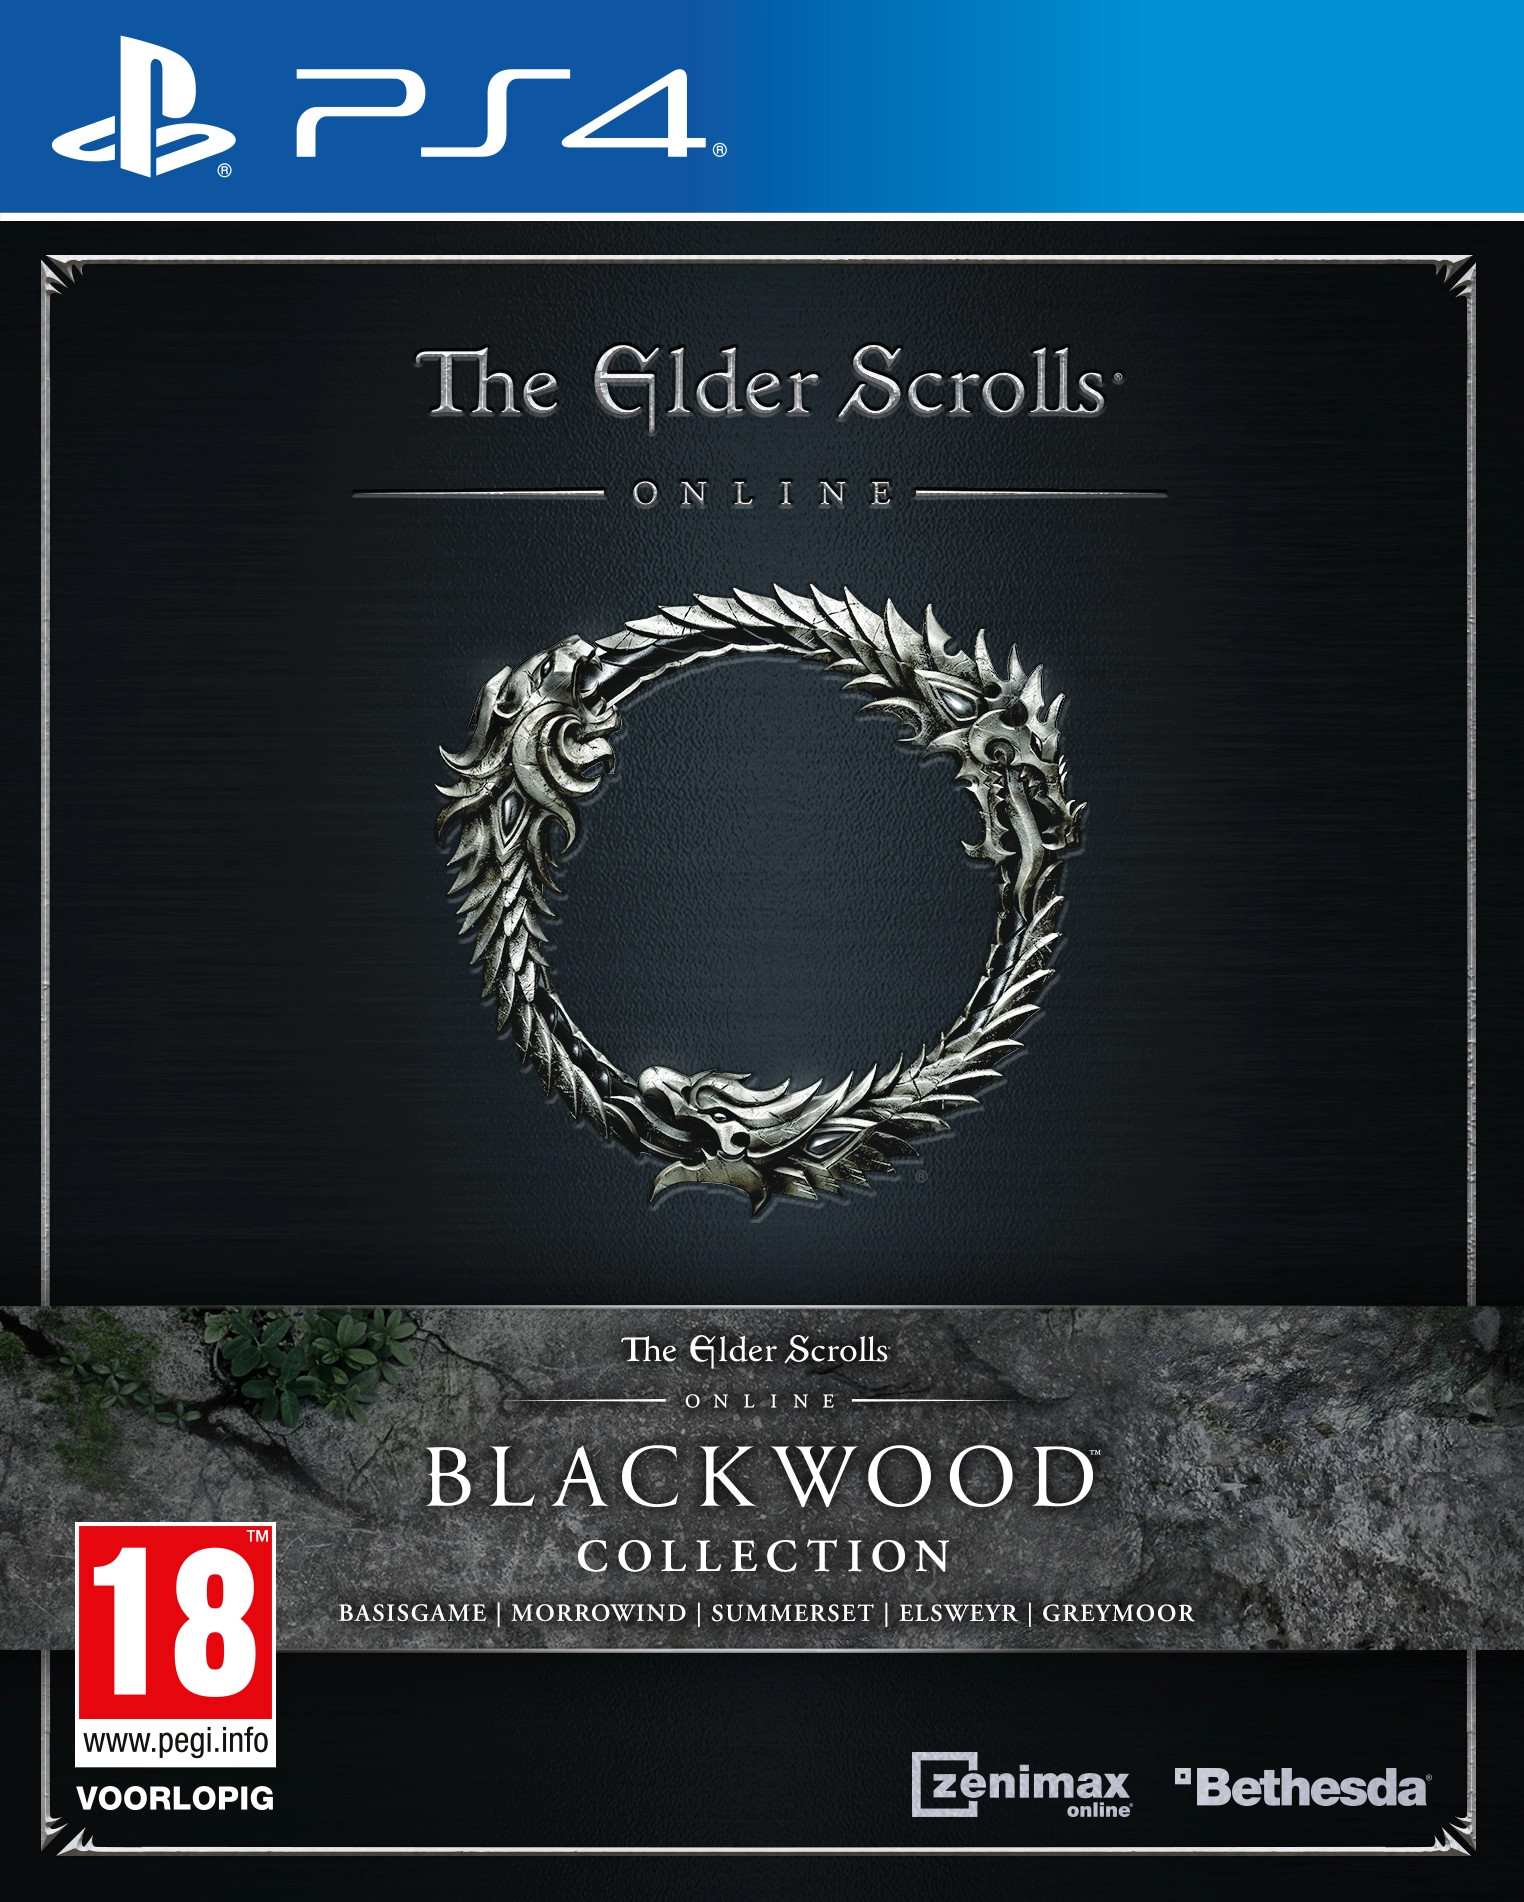 The Elder Scrolls Online : Blackwood Collection kopen